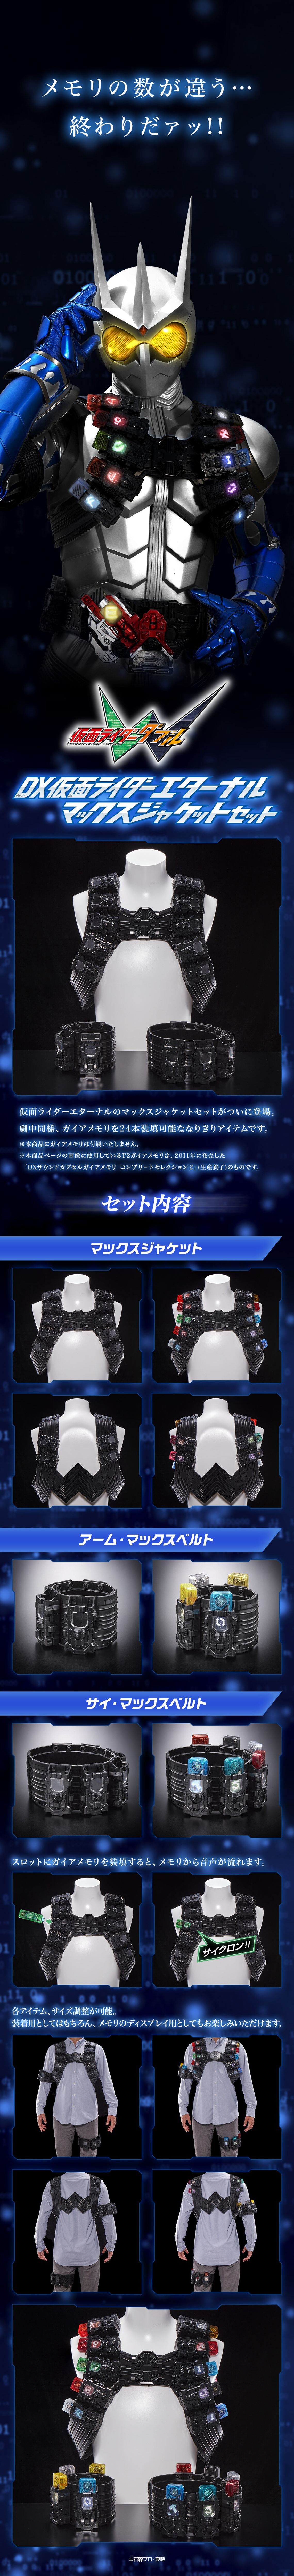 DX仮面ライダーエターナル マックスジャケットセット | 仮面ライダーW 